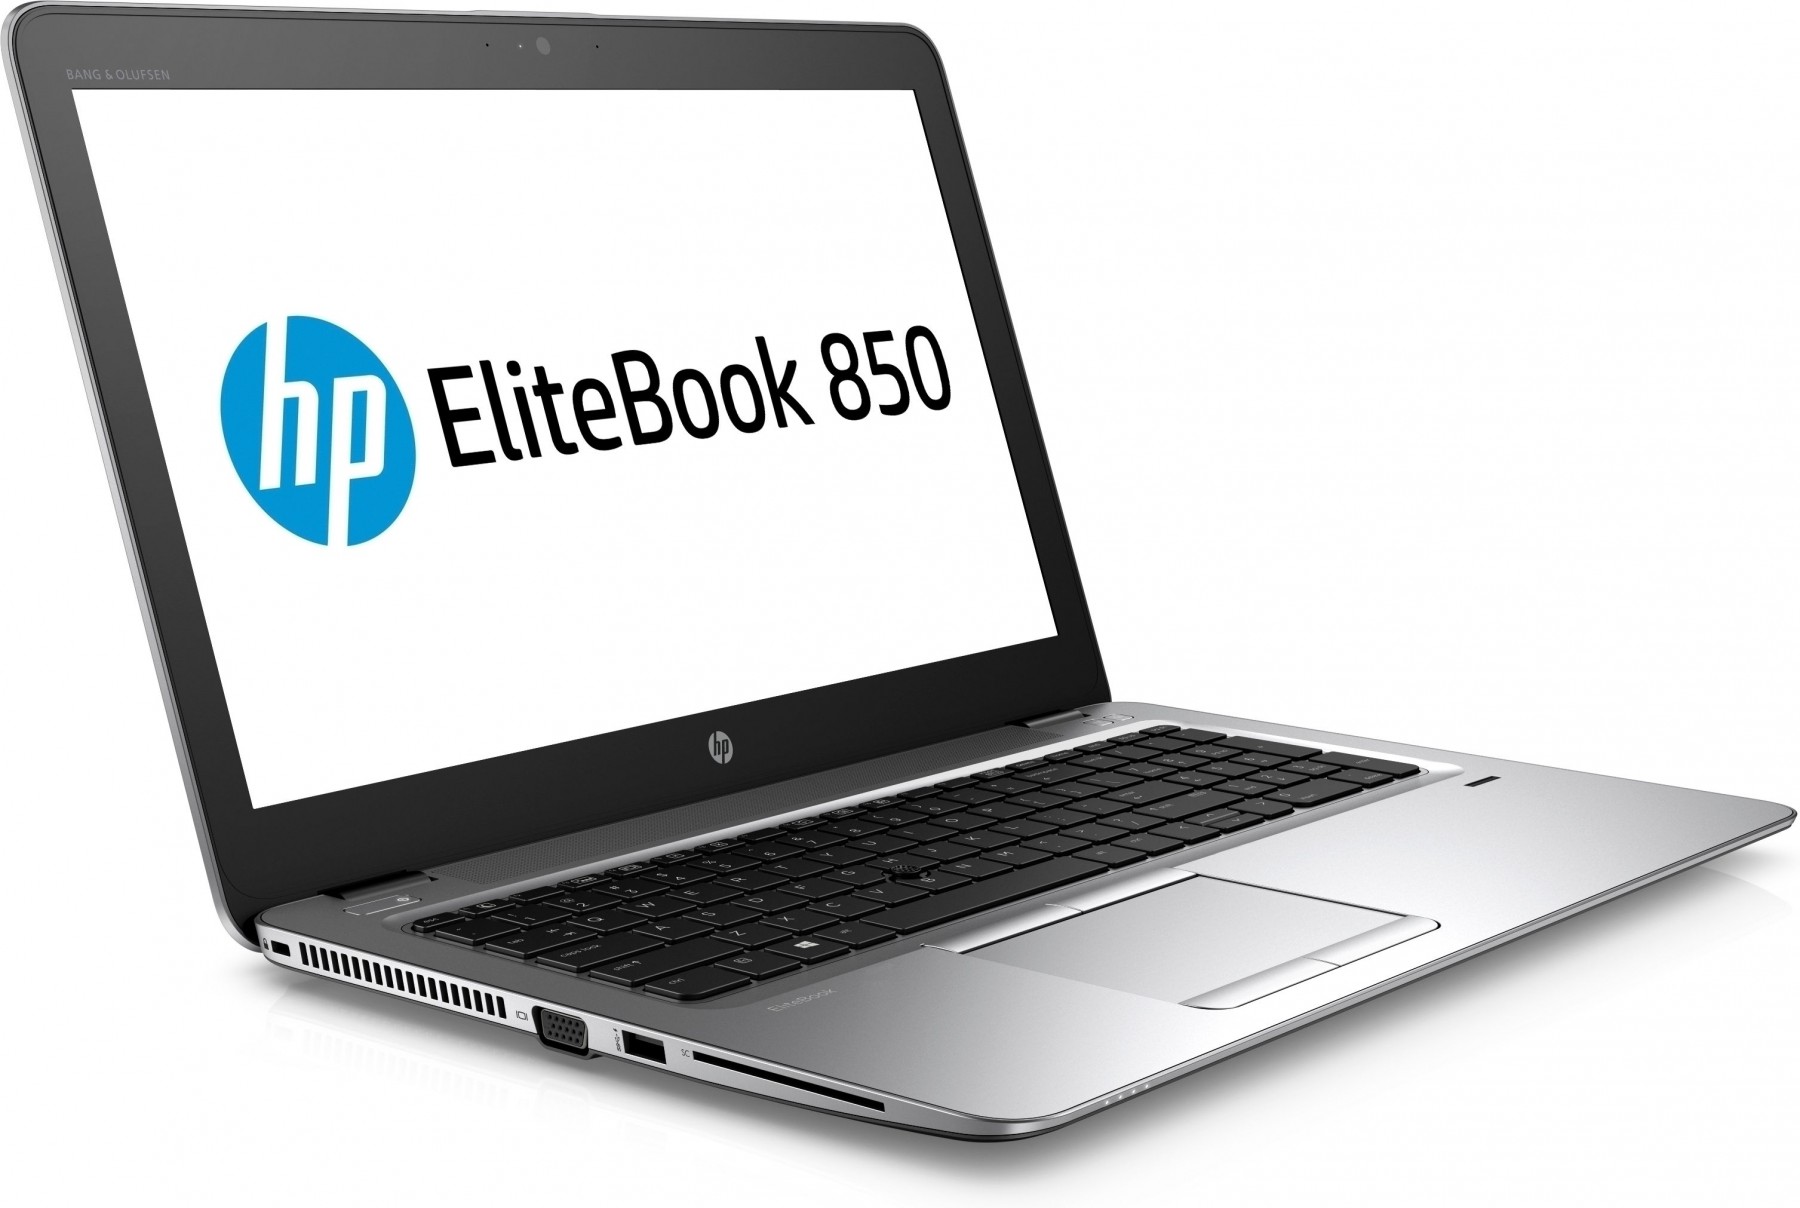 HP EliteBook 850 G3 Intel Core i5-6200U 8GB RAM 256GB SDD 15.6" screen No Optical Drive Windows 10 Home Premium (64 bit)